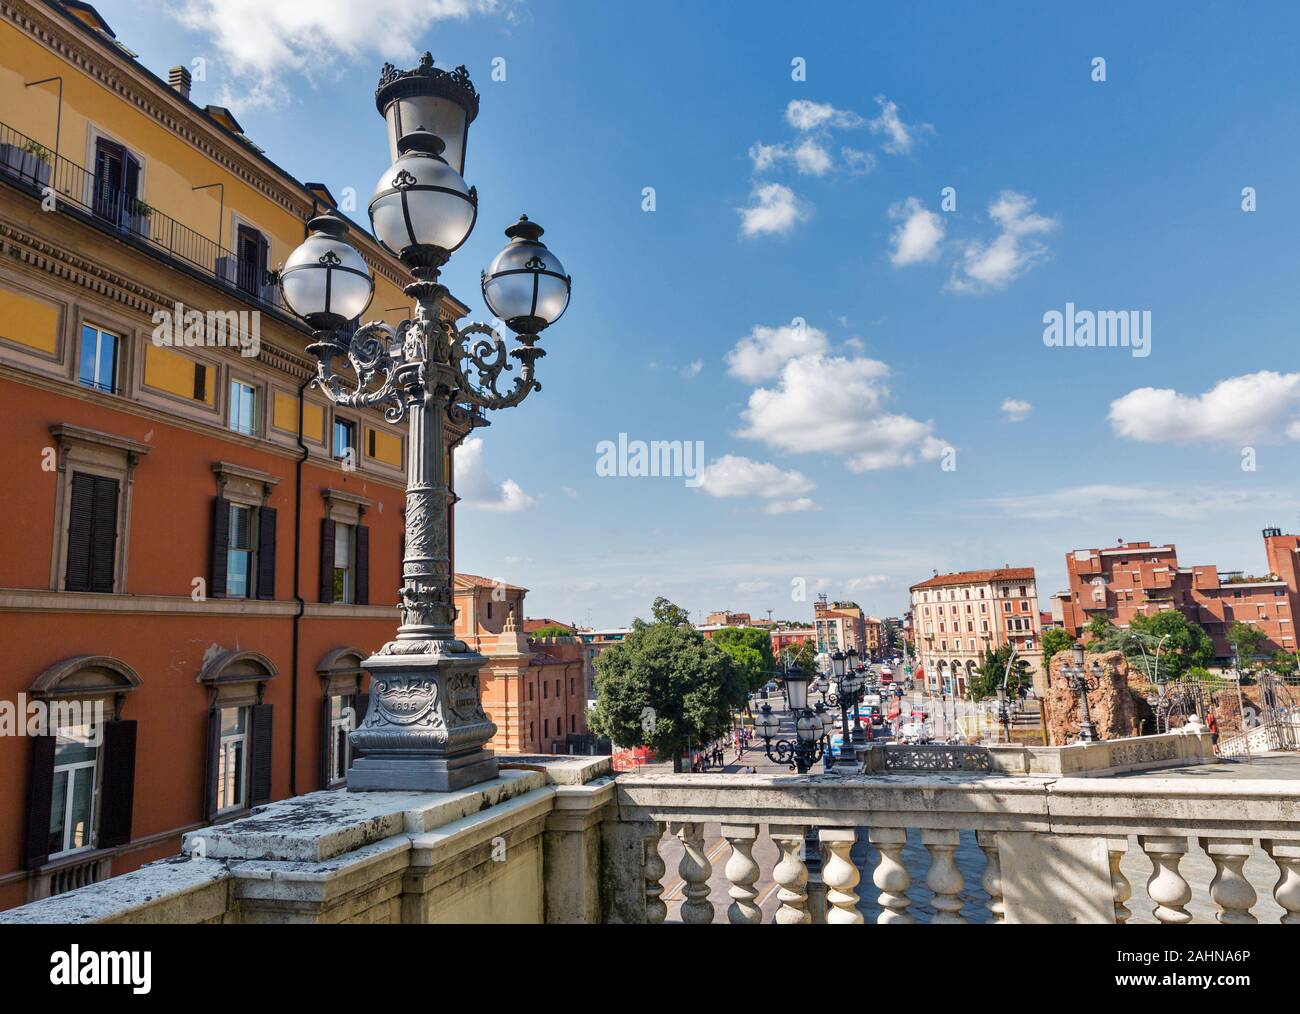 Xx Settembre nella piazza del centro storico della città con il Pincio scalinata porta Galliera e fortezza di rovine.- a Bologna, Italia. Foto Stock